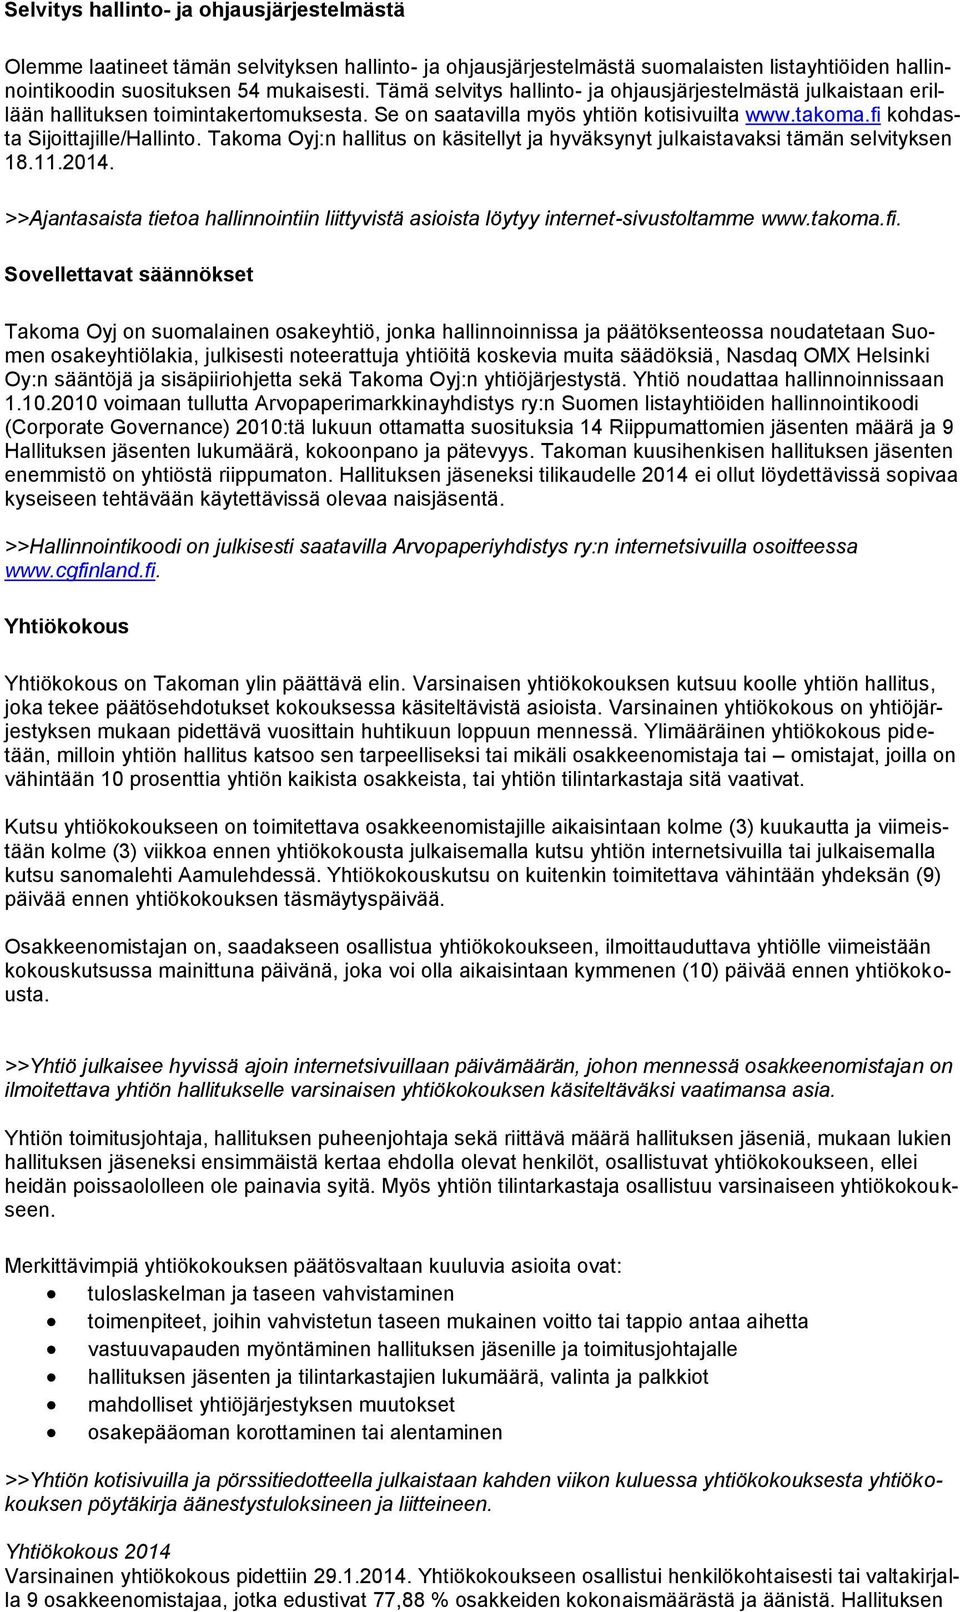 Takoma Oyj:n hallitus on käsitellyt ja hyväksynyt julkaistavaksi tämän selvityksen 18.11.2014. >>Ajantasaista tietoa hallinnointiin liittyvistä asioista löytyy internet-sivustoltamme www.takoma.fi.